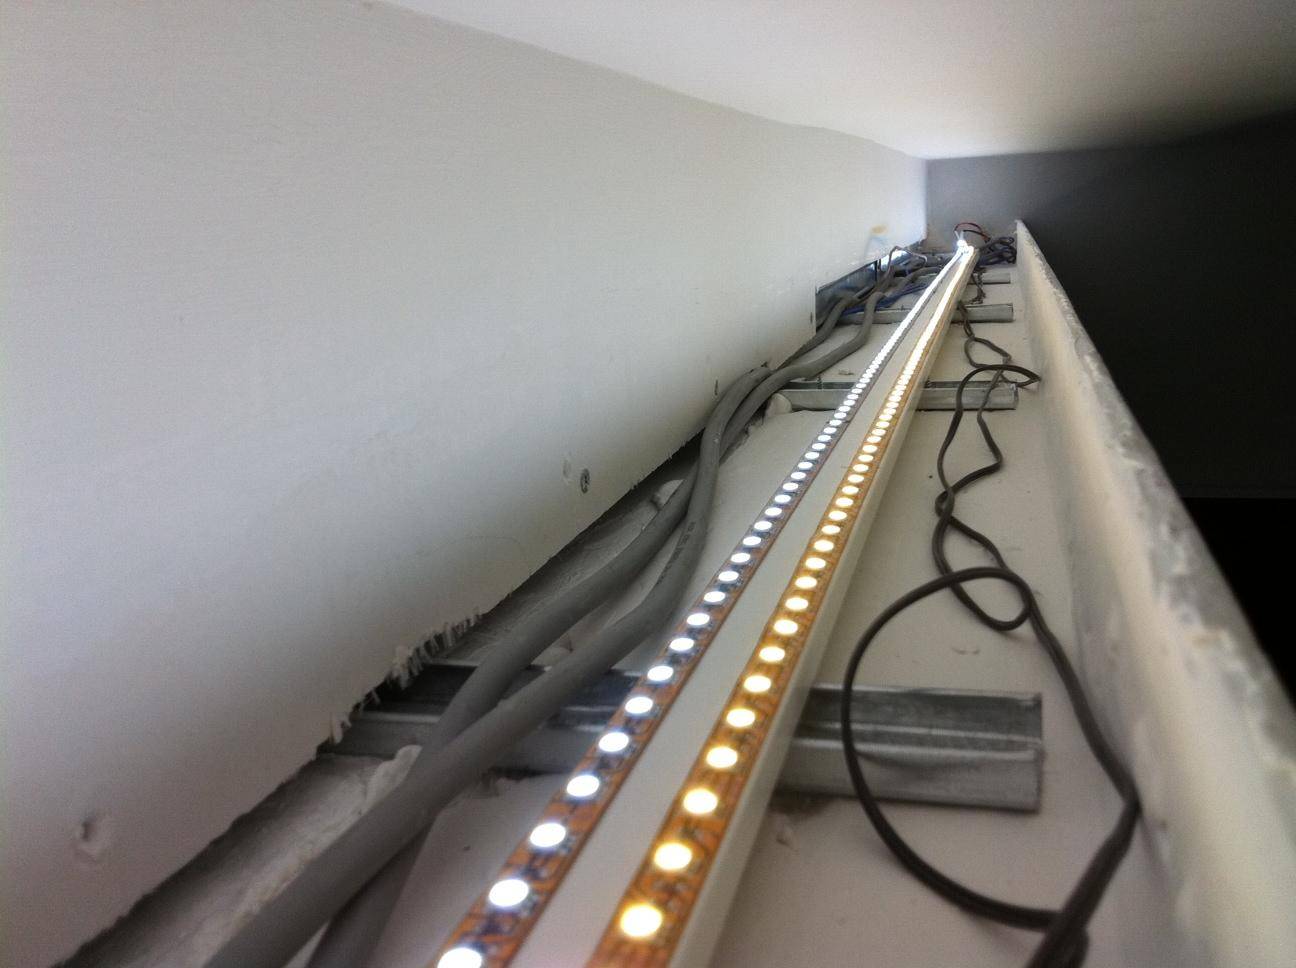 Подсветка потолка: виды подсветки, подбор светодиодной ленты